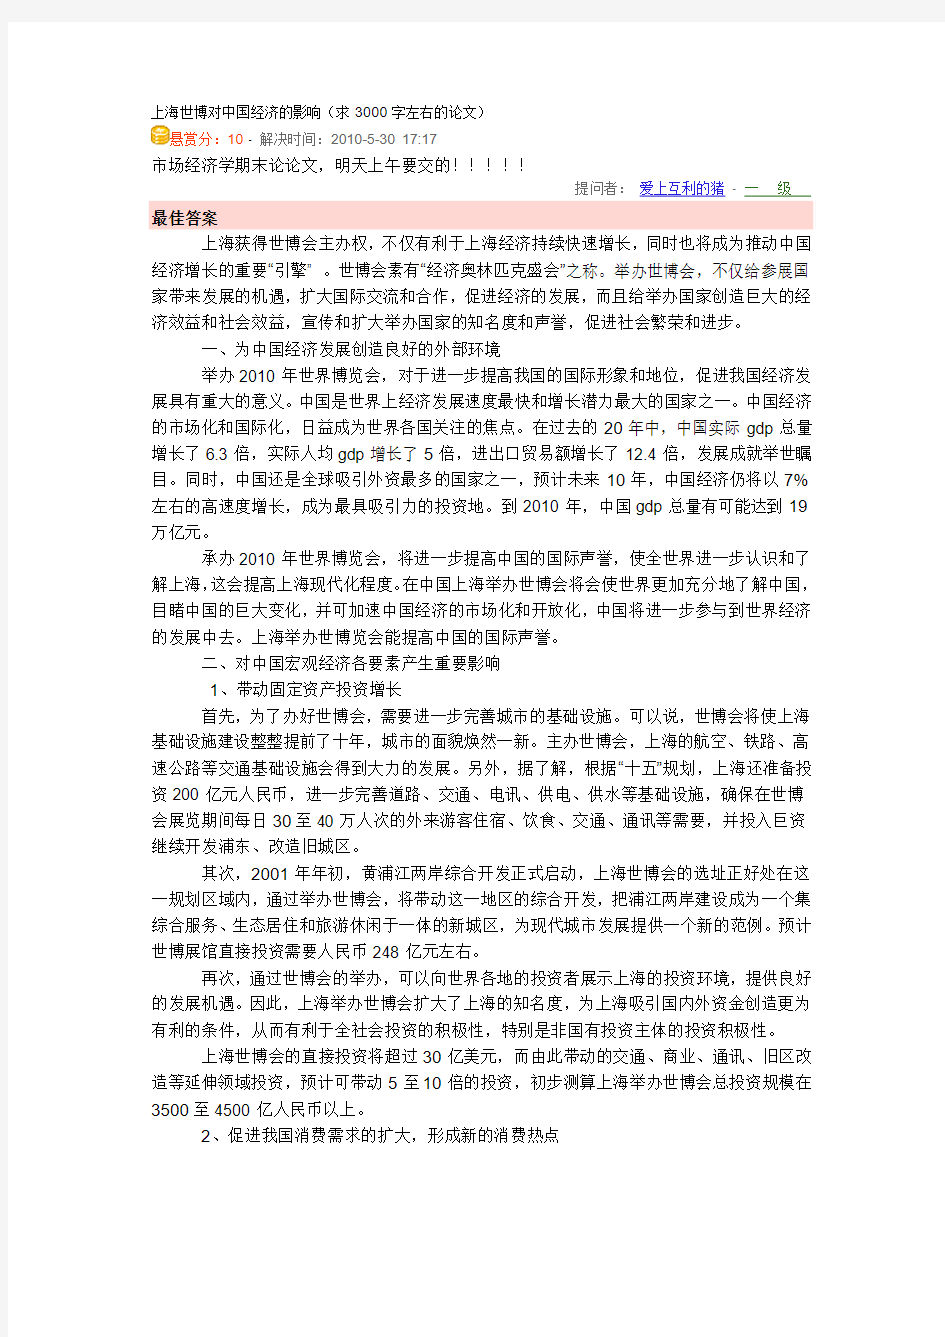 上海世博对中国经济的影响